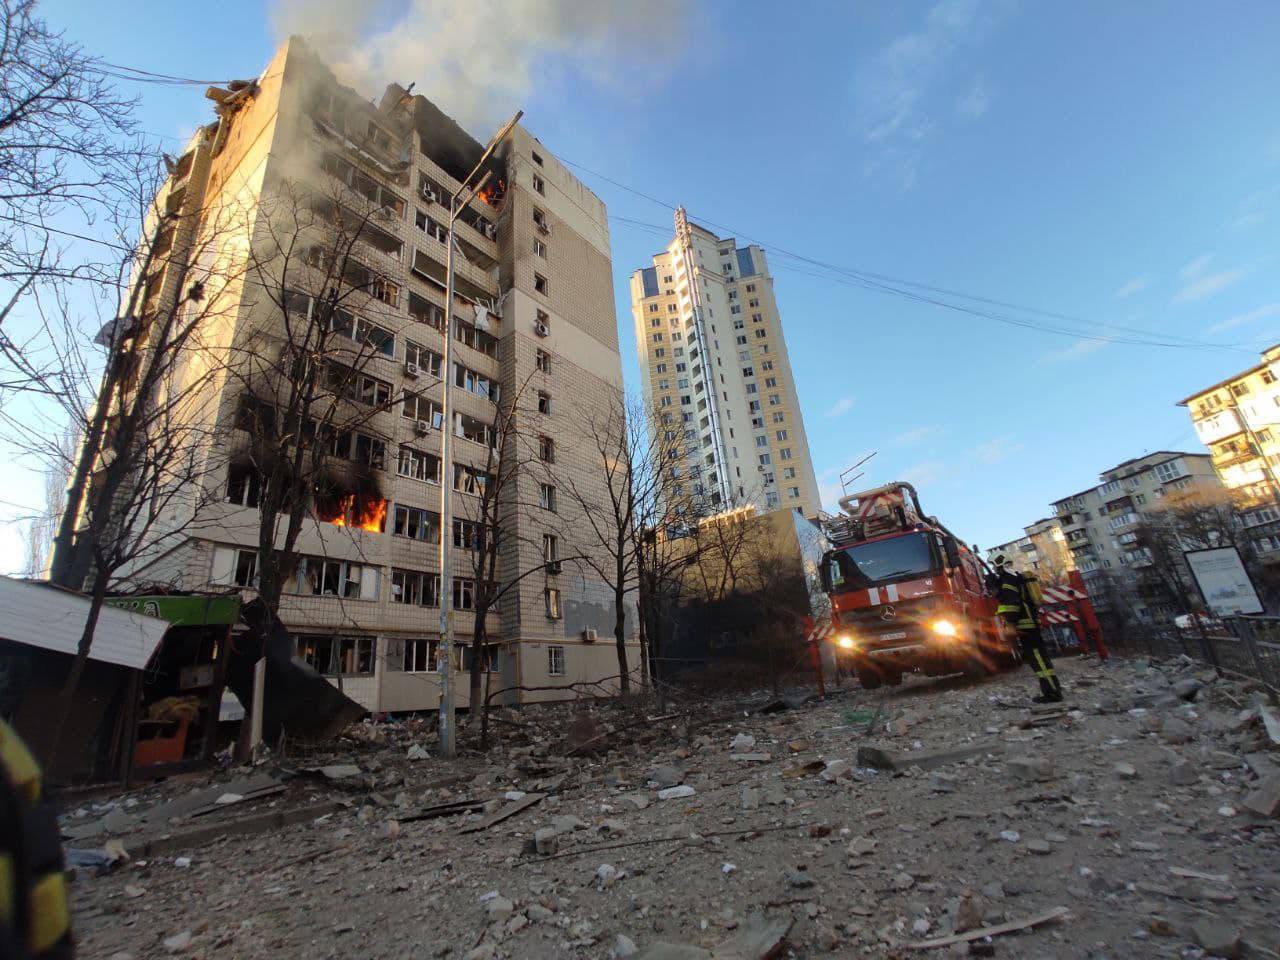 Ουκρανία: Νέος βομβαρδισμός πολυκατοικίας στο Κίεβο - Υπάρχουν τραυματίες, έρευνες για εγκλωβισμένους